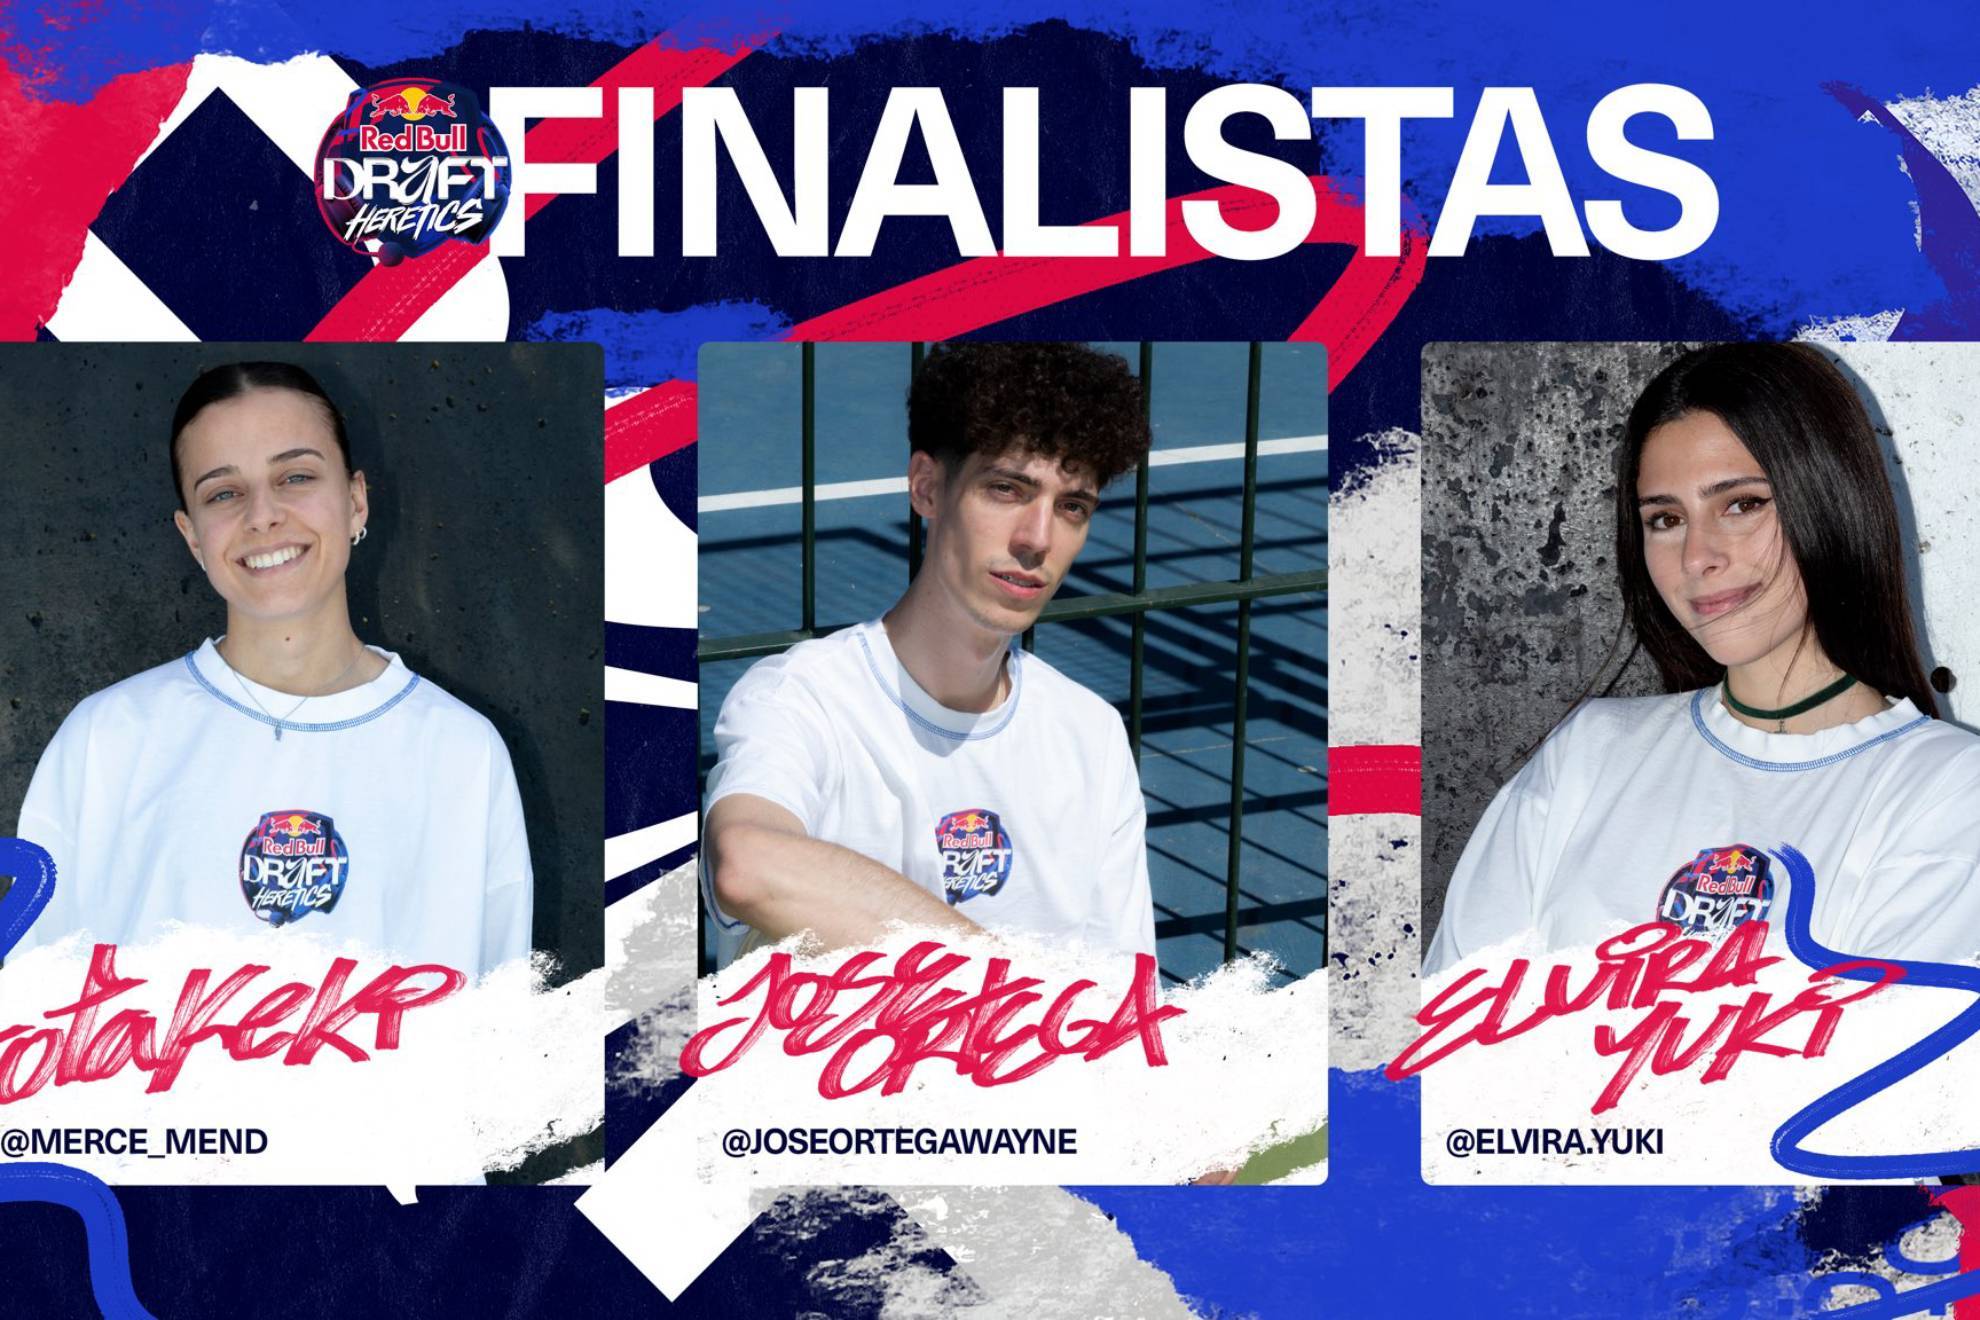 Estos son los tres finalistas del Red Bull Draft Heretics